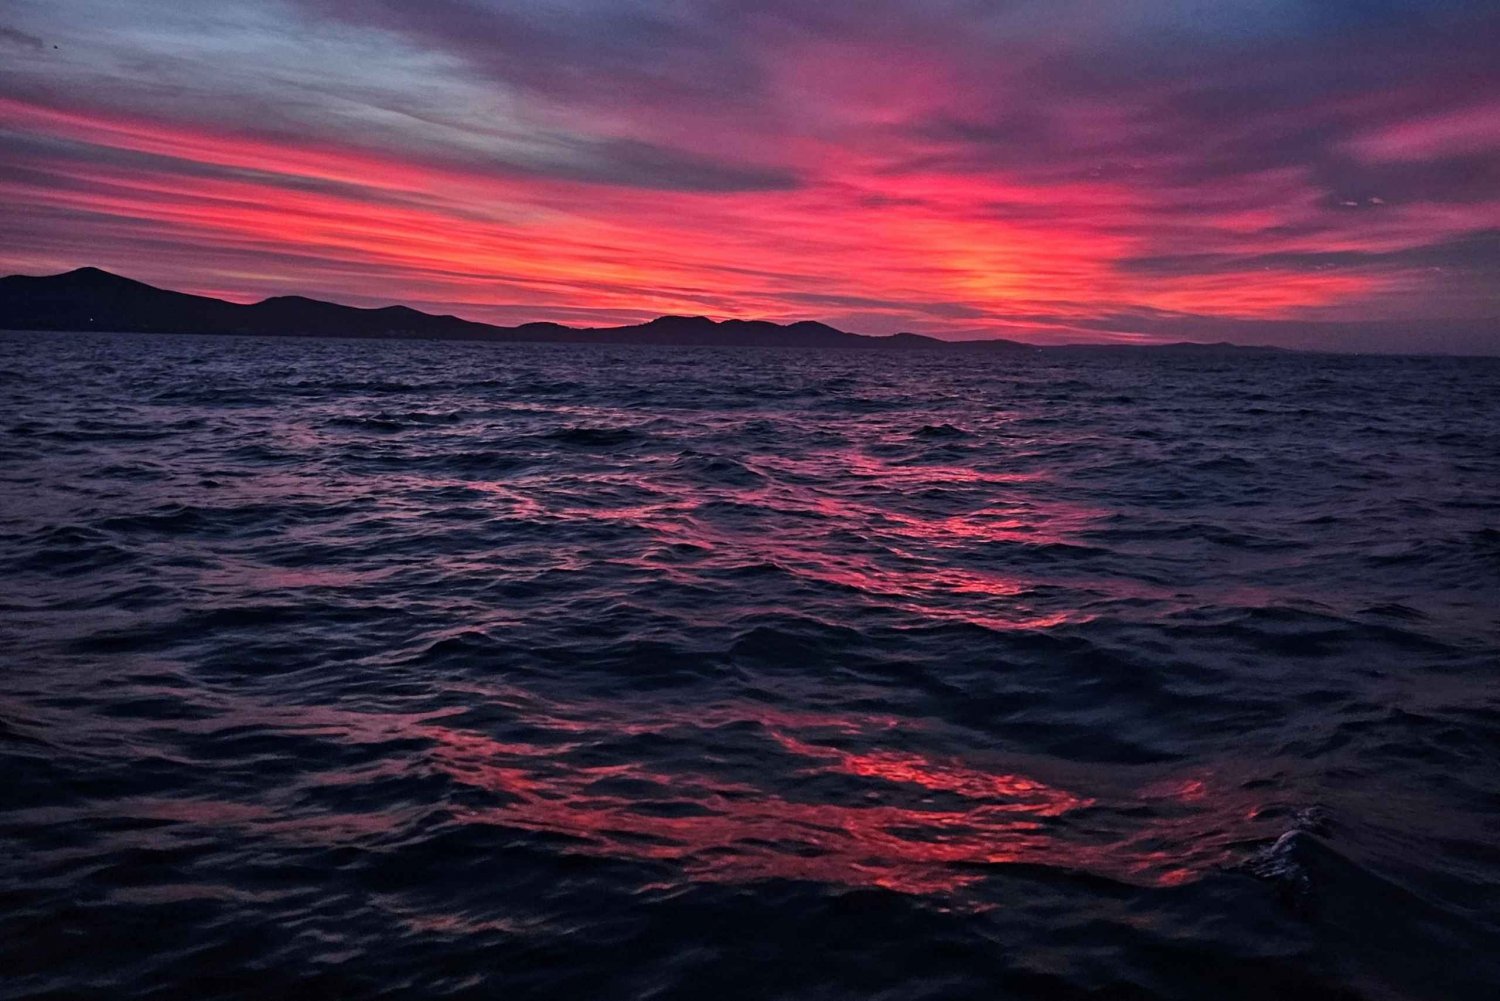 Zadar: Tour en barco al atardecer con una copa de Prosecco